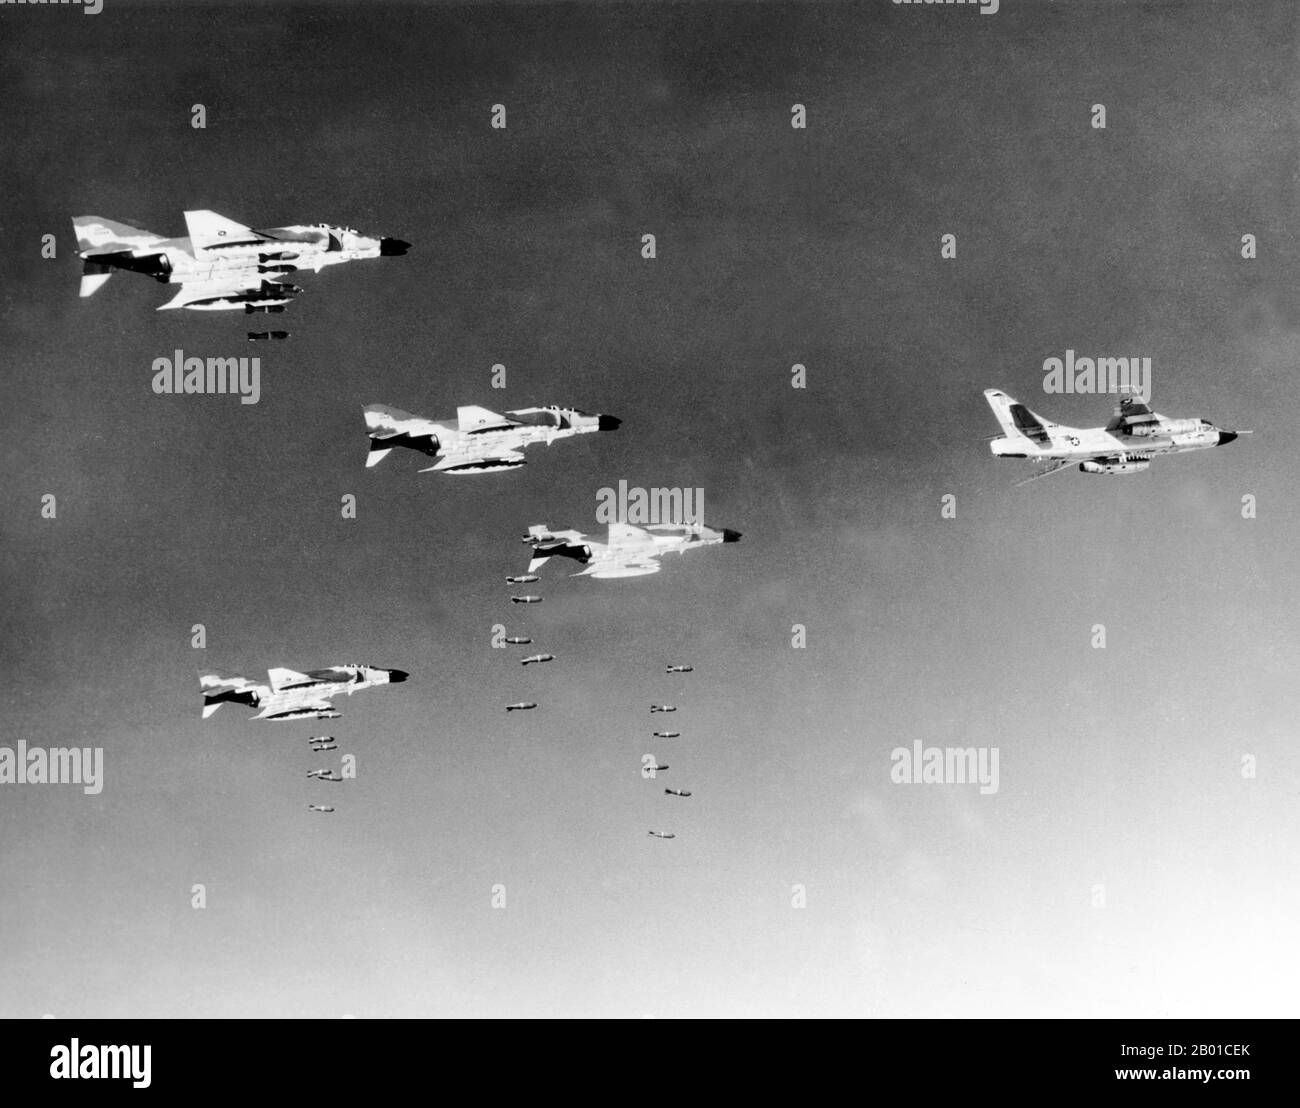 Vietnam: Unter der Führung eines Zerstörers der Douglas RB-66B-DL werfen Piloten, die mit der Air Force McDonnell F-4C Phantom II fliegen, Bomben auf ein kommunistisches Militärziel in Nordvietnam., 1966. August. Der zweite Indochina-Krieg, in Amerika als Vietnamkrieg bekannt, war ein militärischer Konflikt aus der Zeit des Kalten Krieges, der sich in Vietnam, Laos und Kambodscha vom 1. November 1955 bis zum Fall Saigons am 30. April 1975 ereignete. Dieser Krieg folgte dem ersten Indochina-Krieg und wurde zwischen Nordvietnam, unterstützt von seinen kommunistischen Verbündeten, und der Regierung von Südvietnam, unterstützt von den USA und anderen antikommunistischen Nationen, geführt. Stockfoto